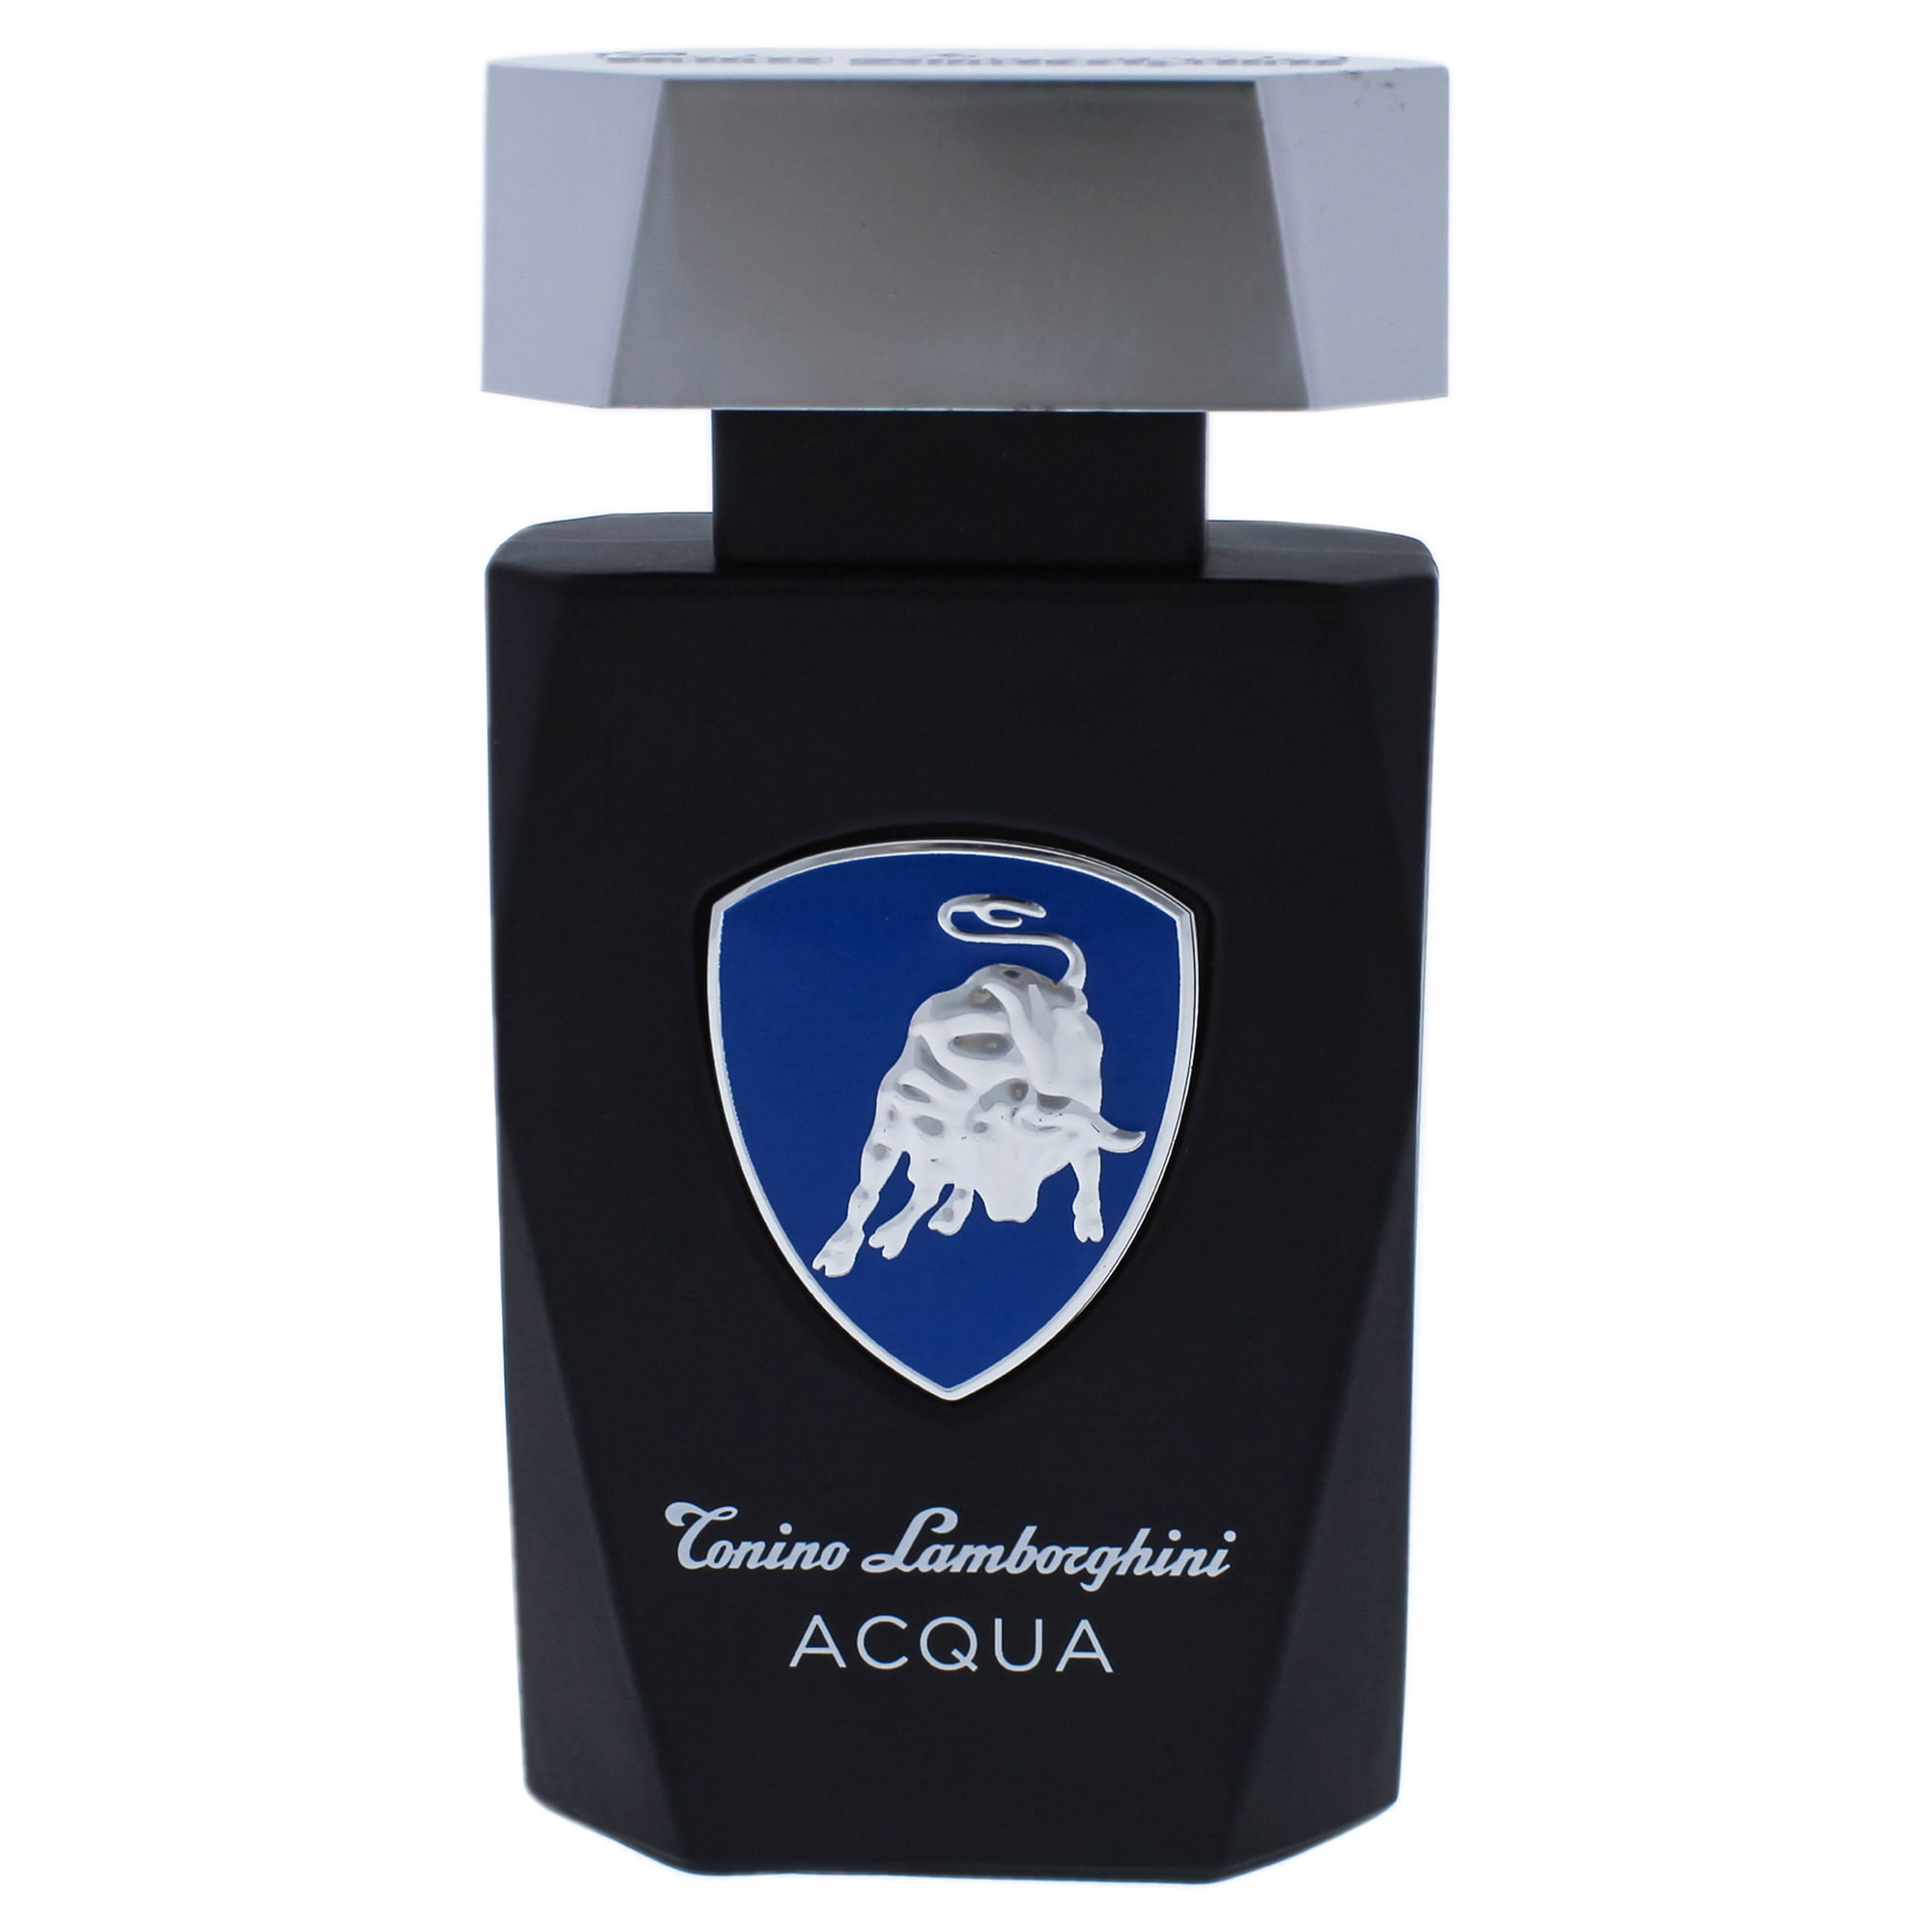 Acqua by Tonino Lamborghini for Men – 4.2 oz EDT Spray